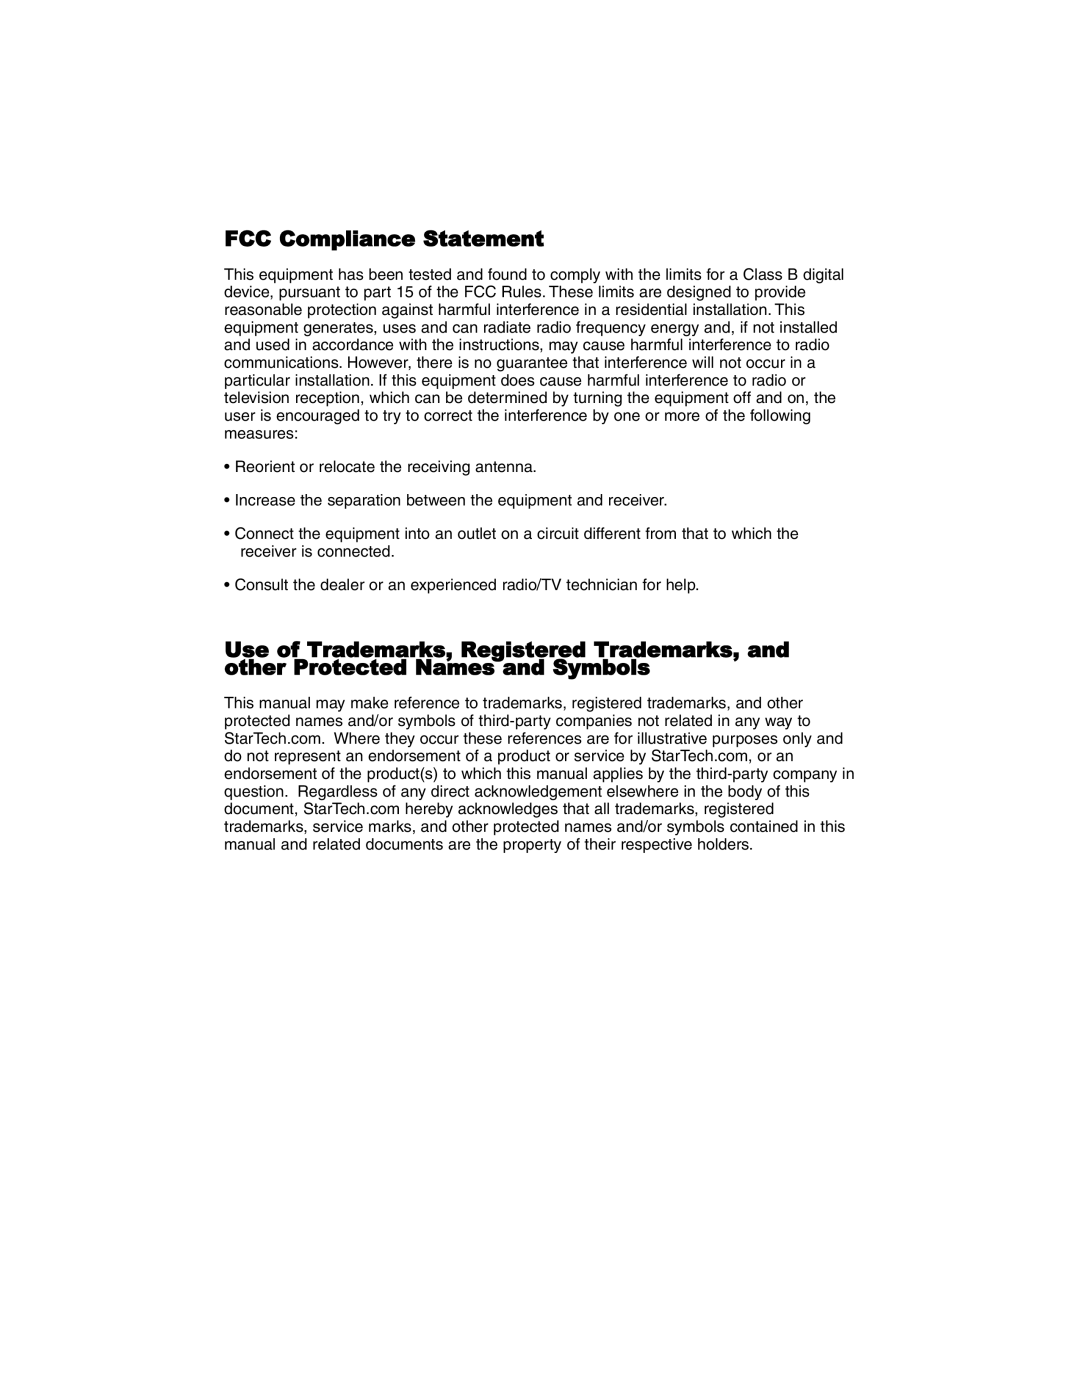 StarTech.com ATX12V2.2 instruction manual FCC Compliance Statement 